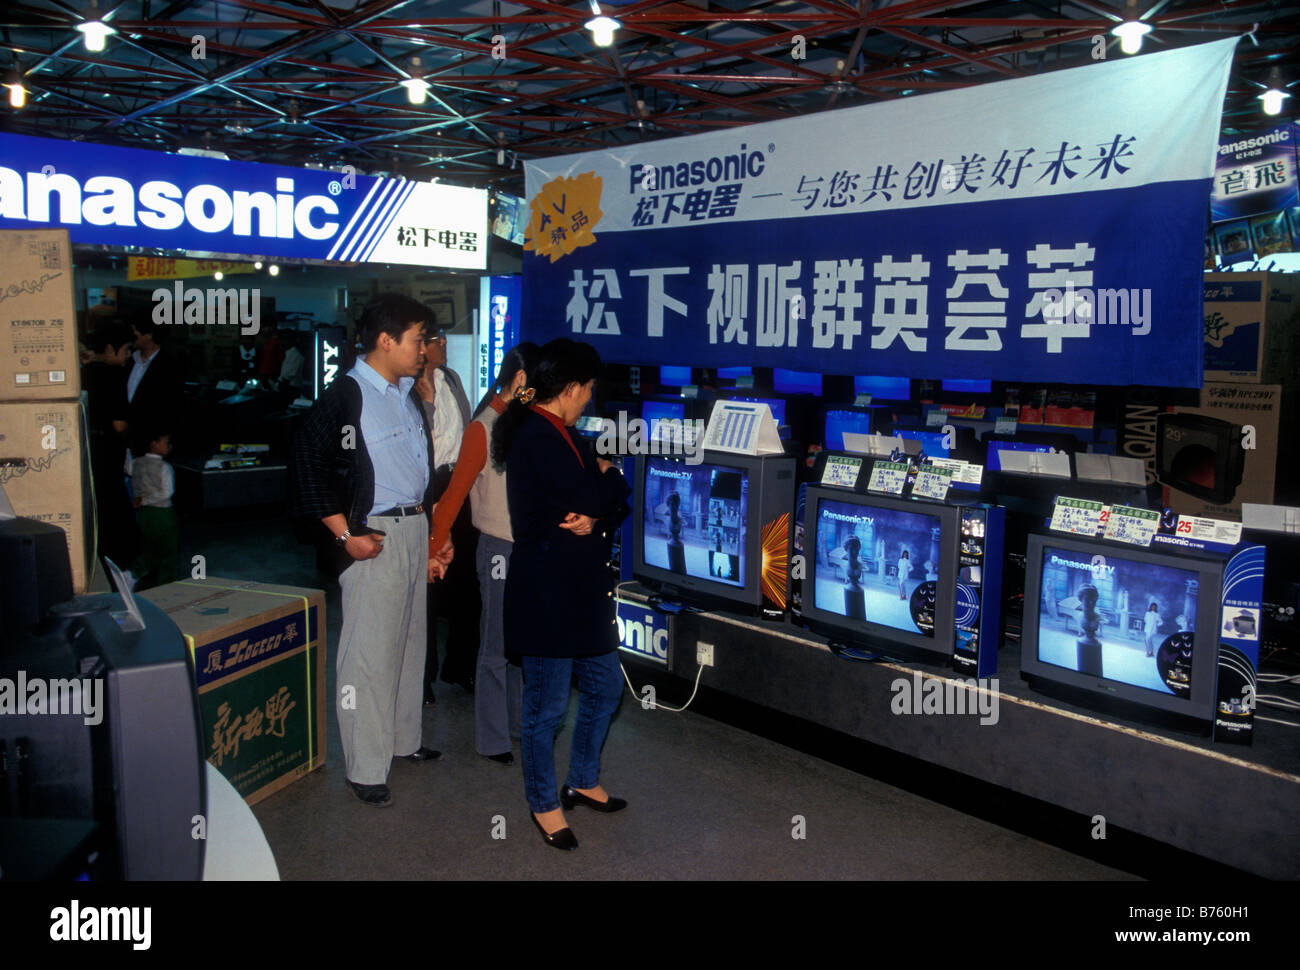 Le peuple chinois, le shopping, les téléviseurs, les produits électroniques, grand magasin, ville de Kunming, Province du Yunnan, Chine Banque D'Images